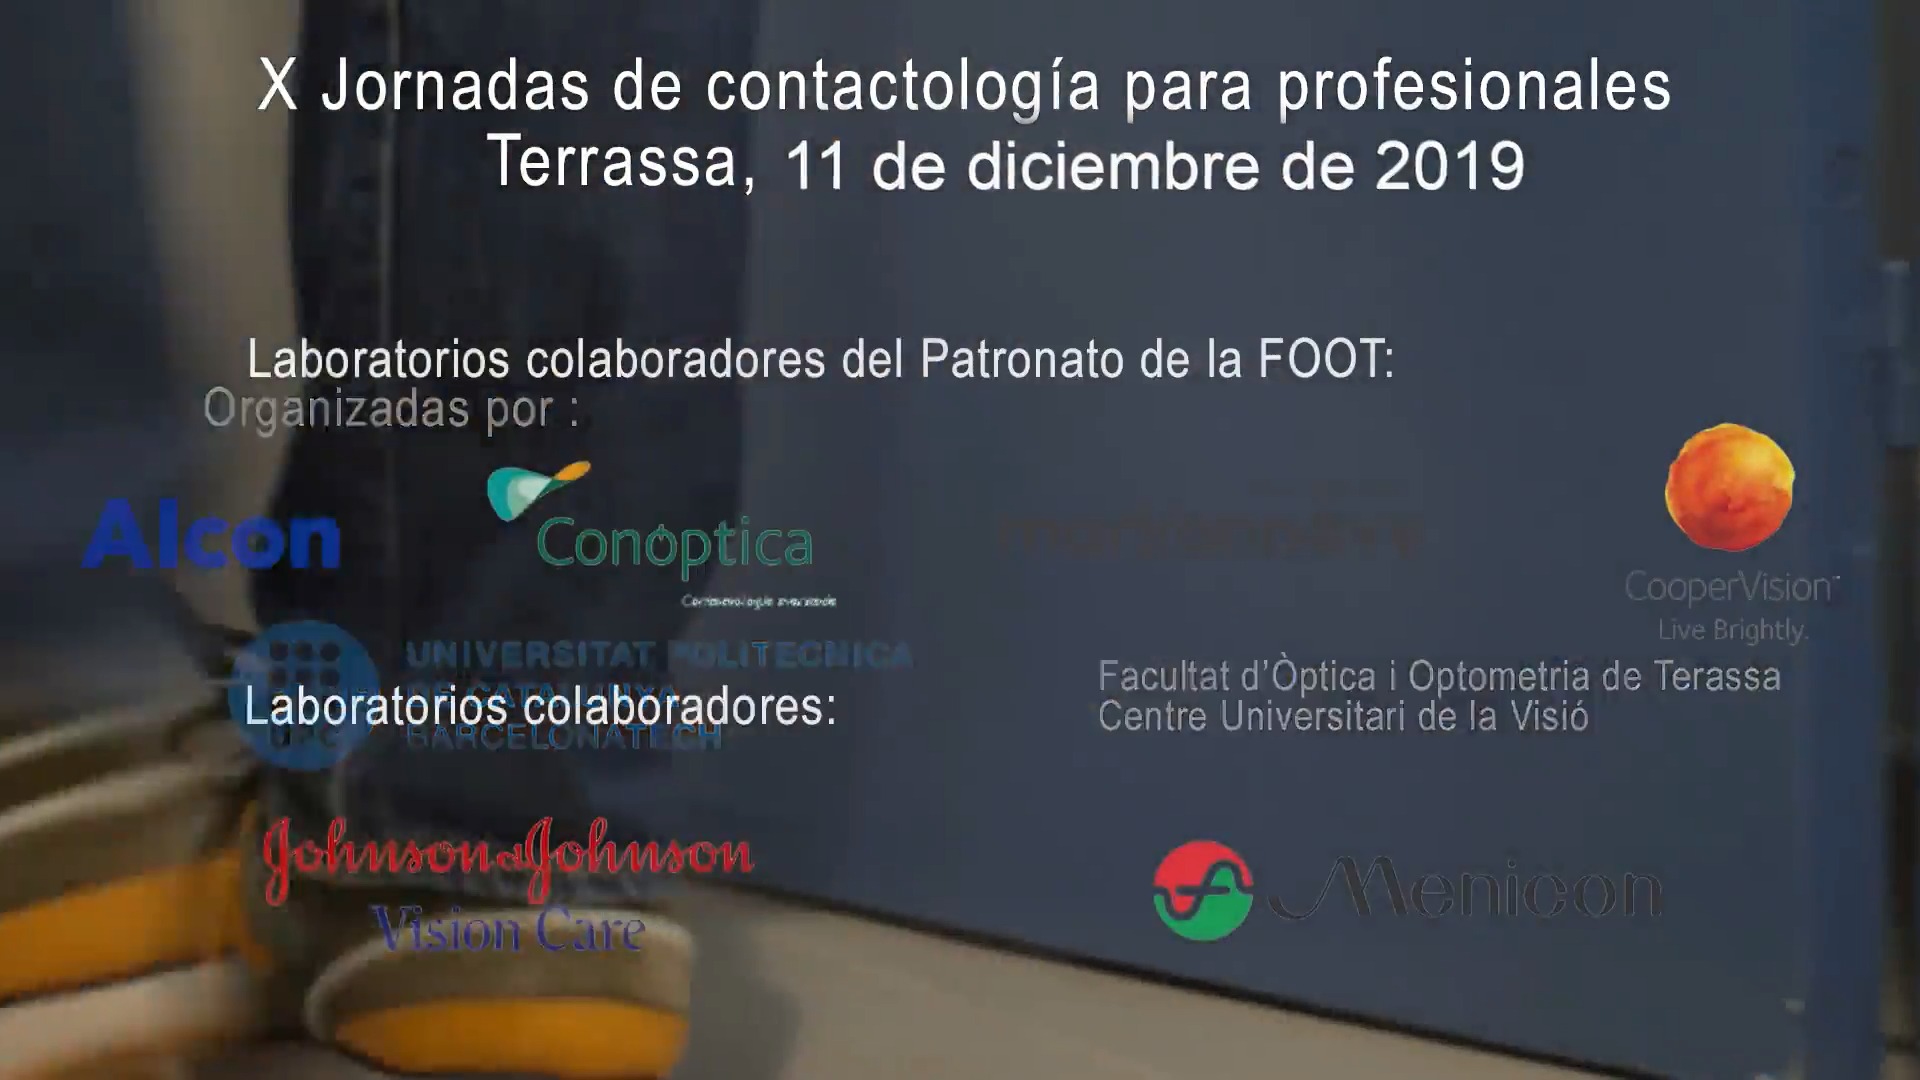 Promoción de las Jornadas de contactología 2019